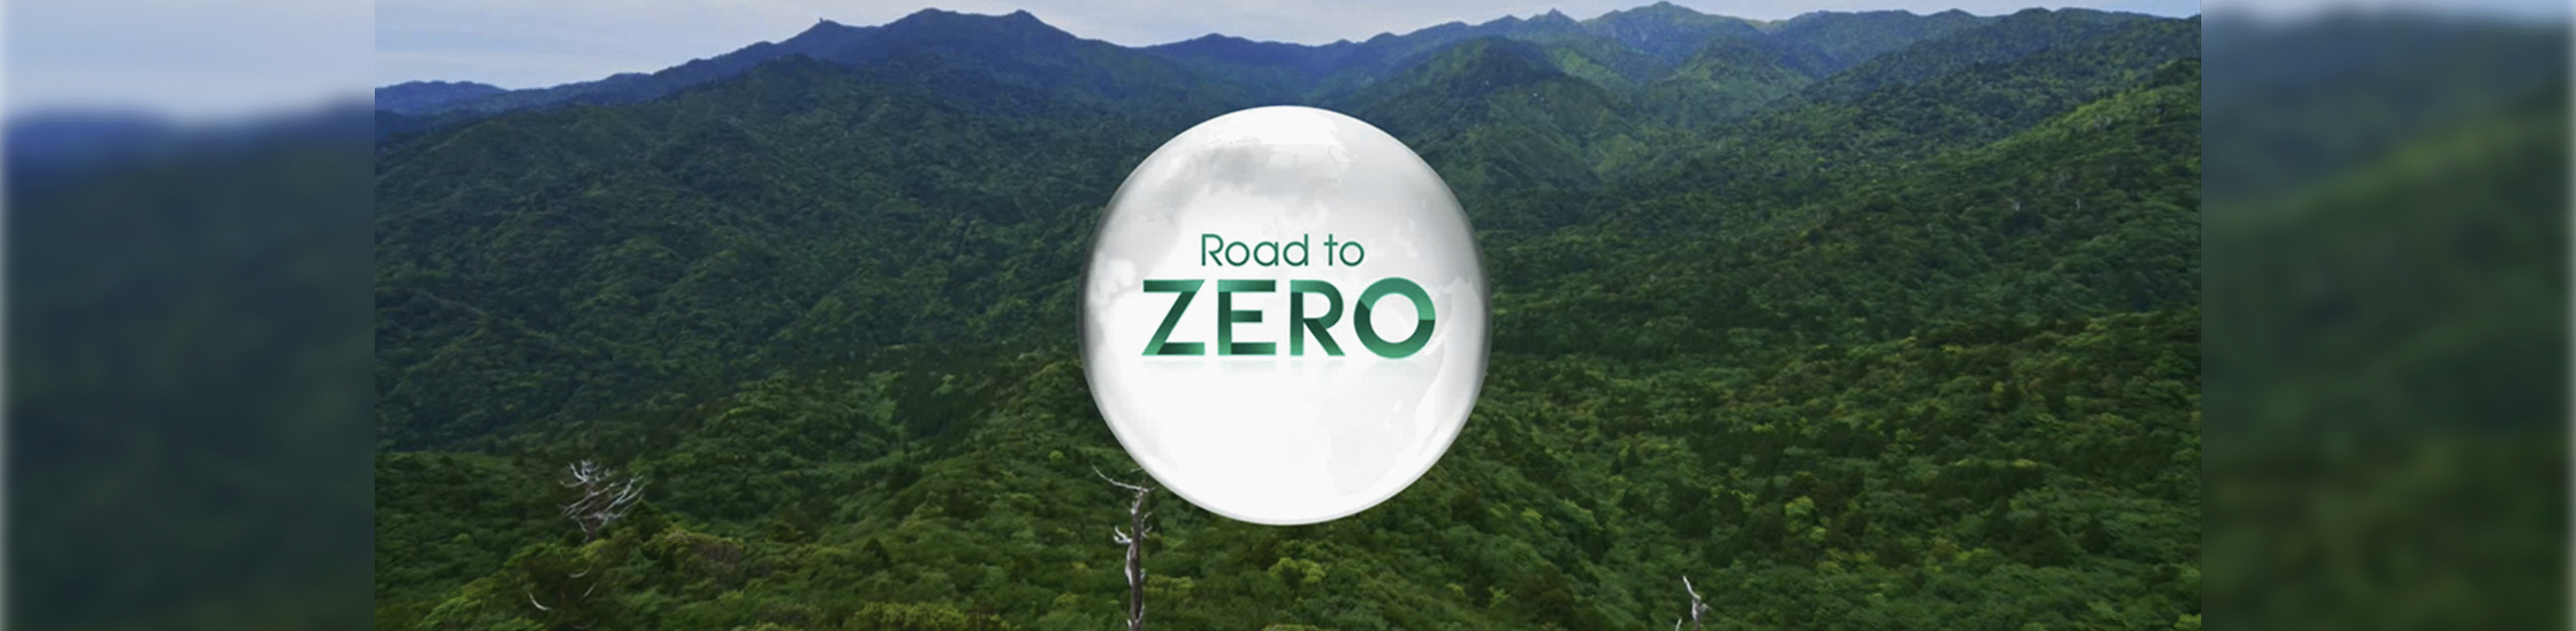 לוגו Road to Zero